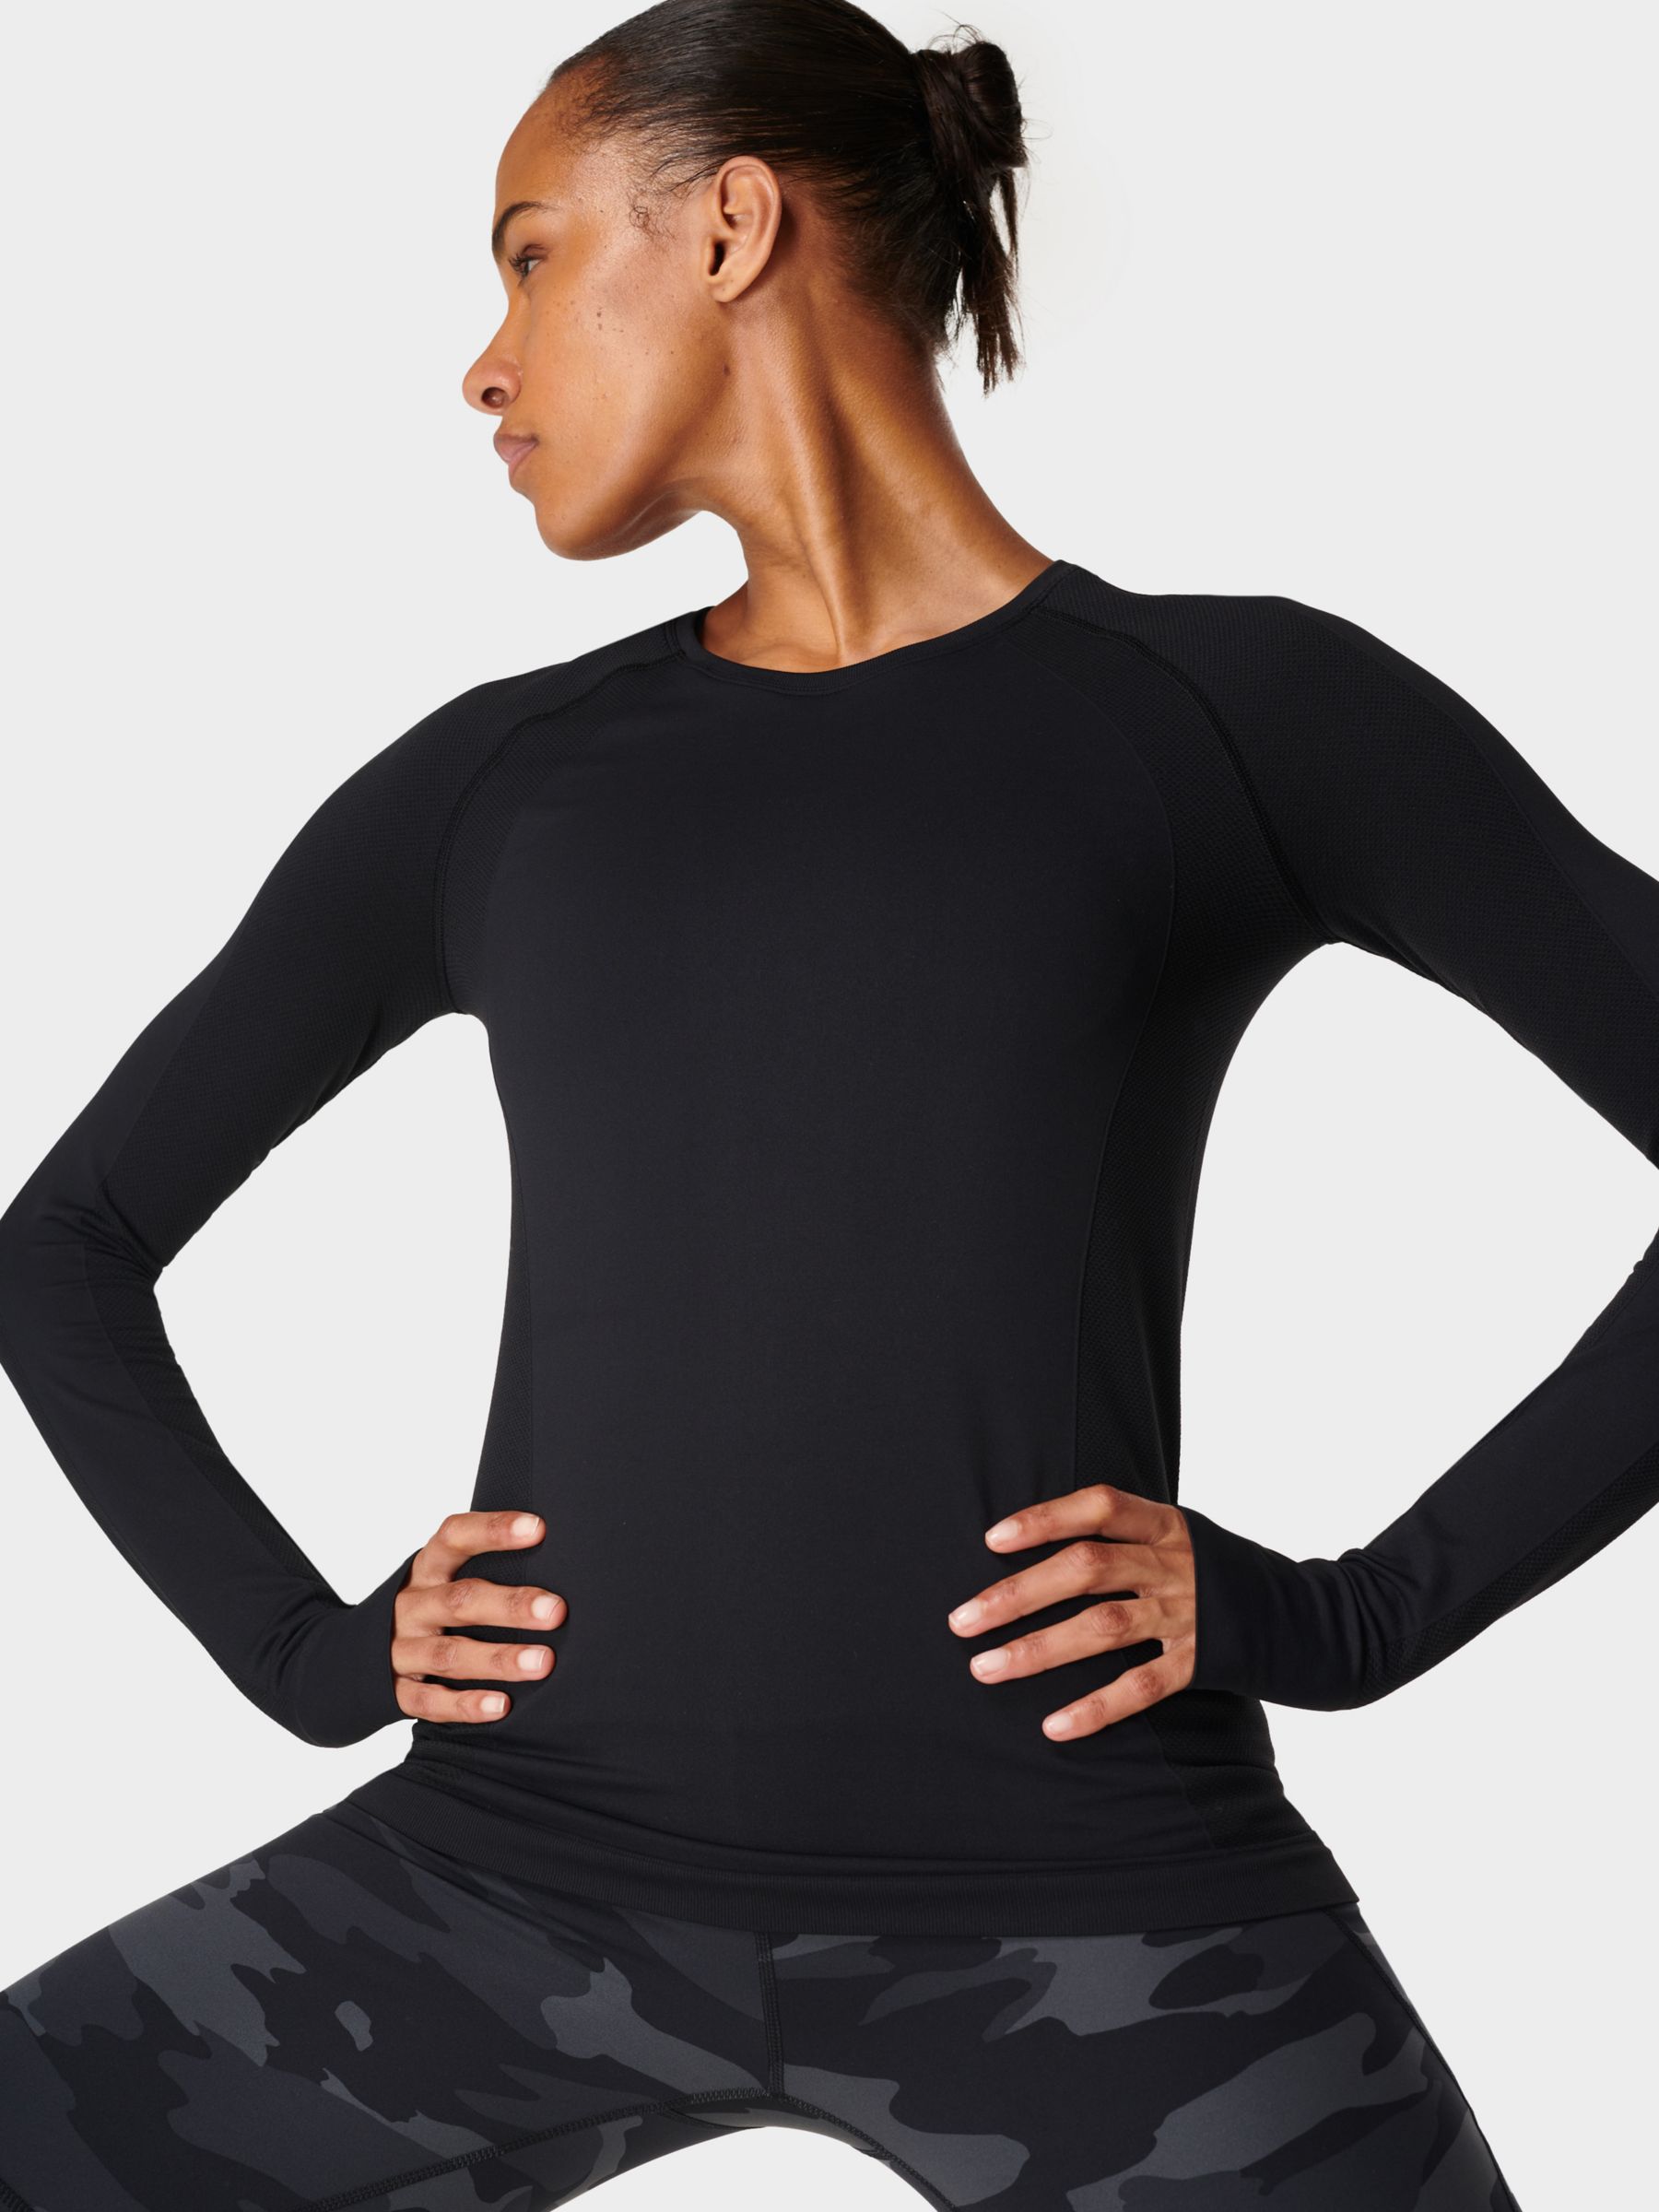 IECCP Women's Gym Top, Sports Shirt, Long Sleeve Yoga Crop Top